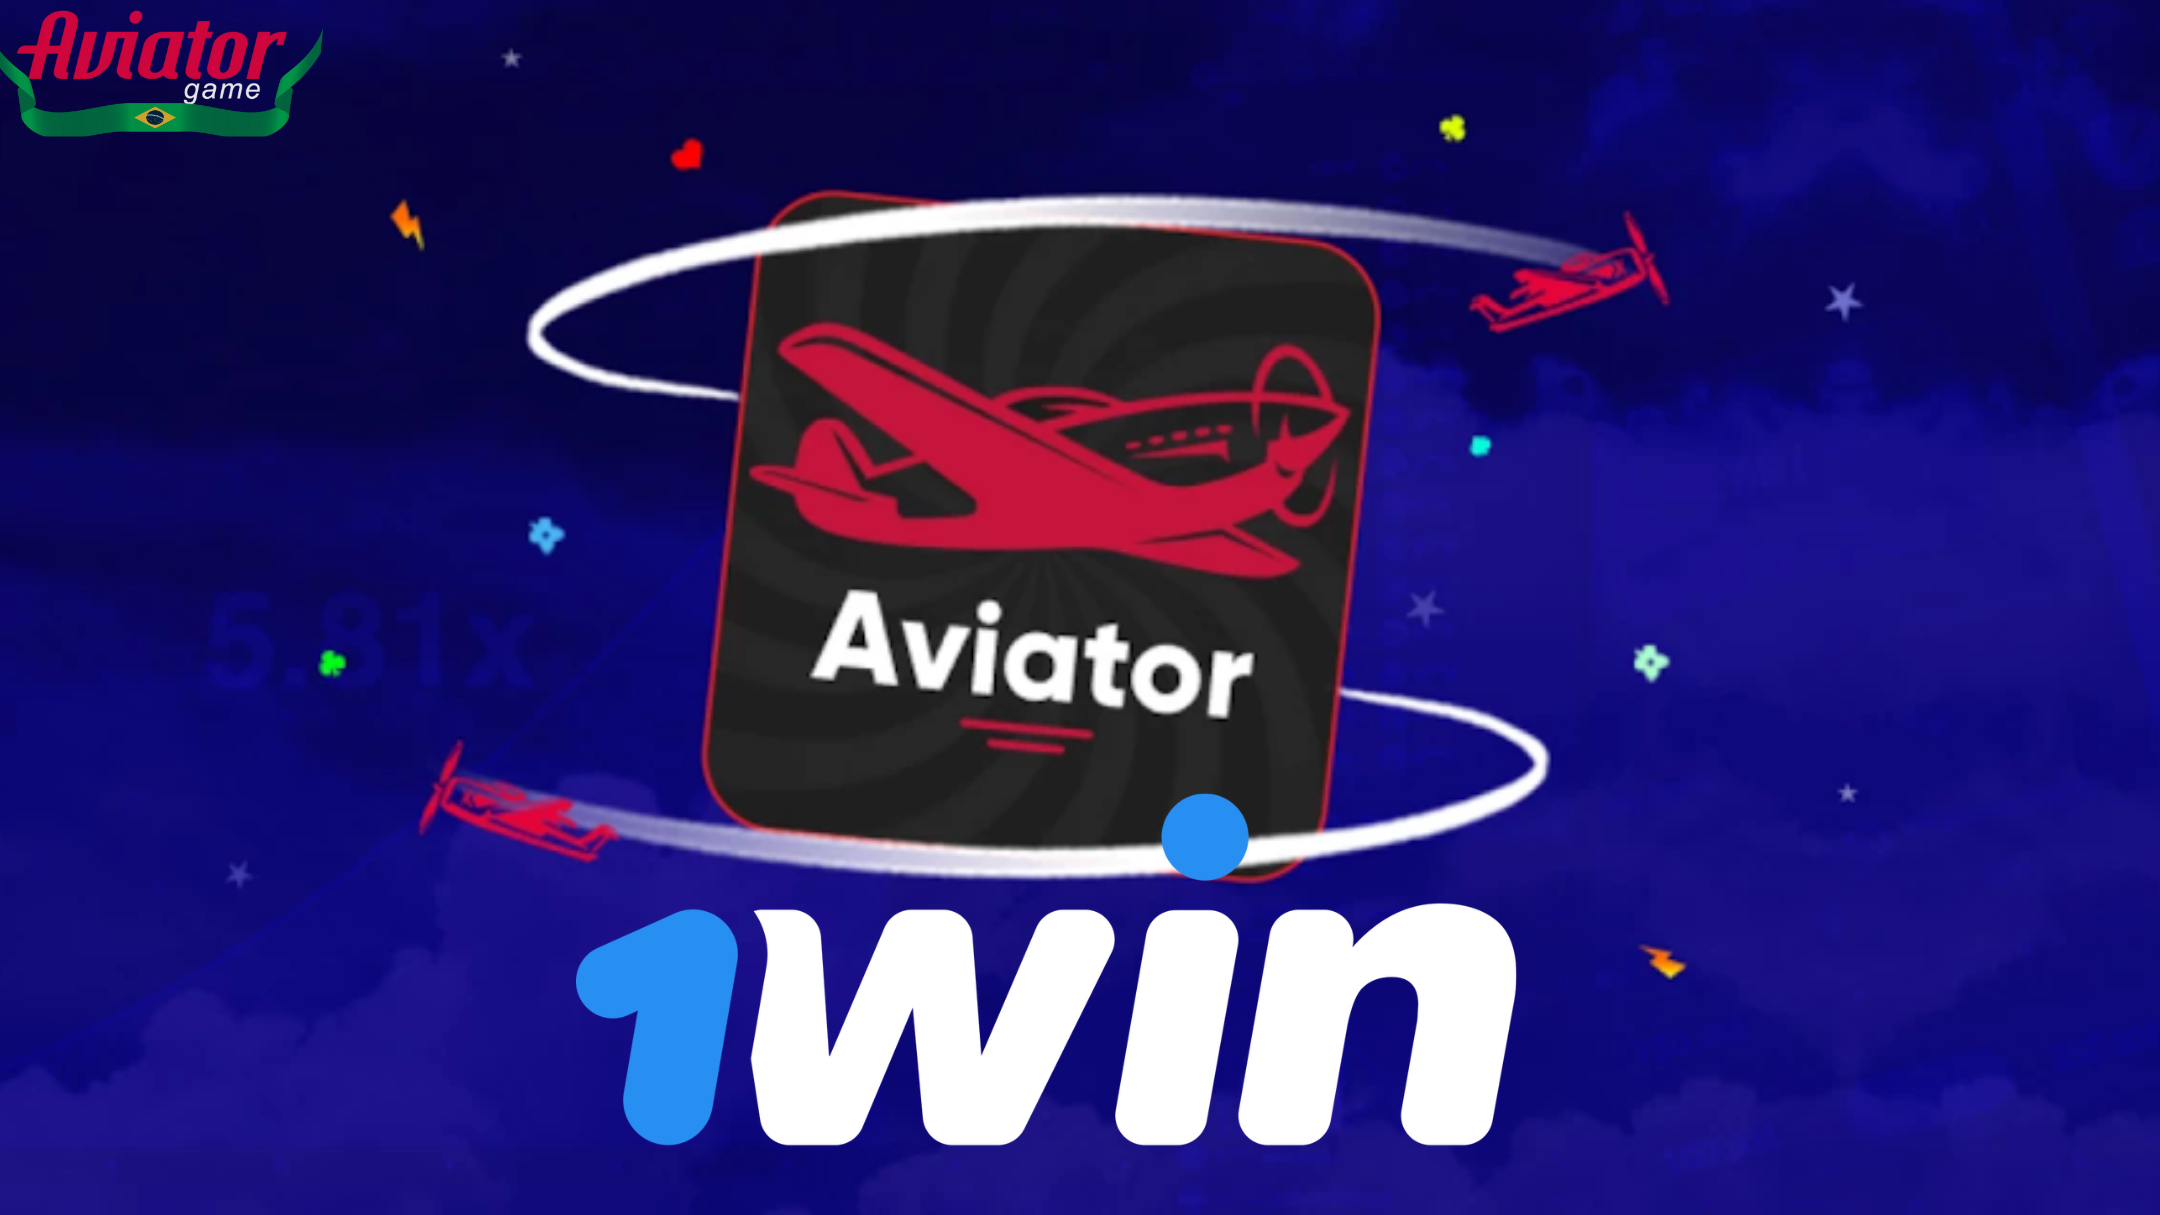 1win Aviator: ascensão meteórica ao sucesso